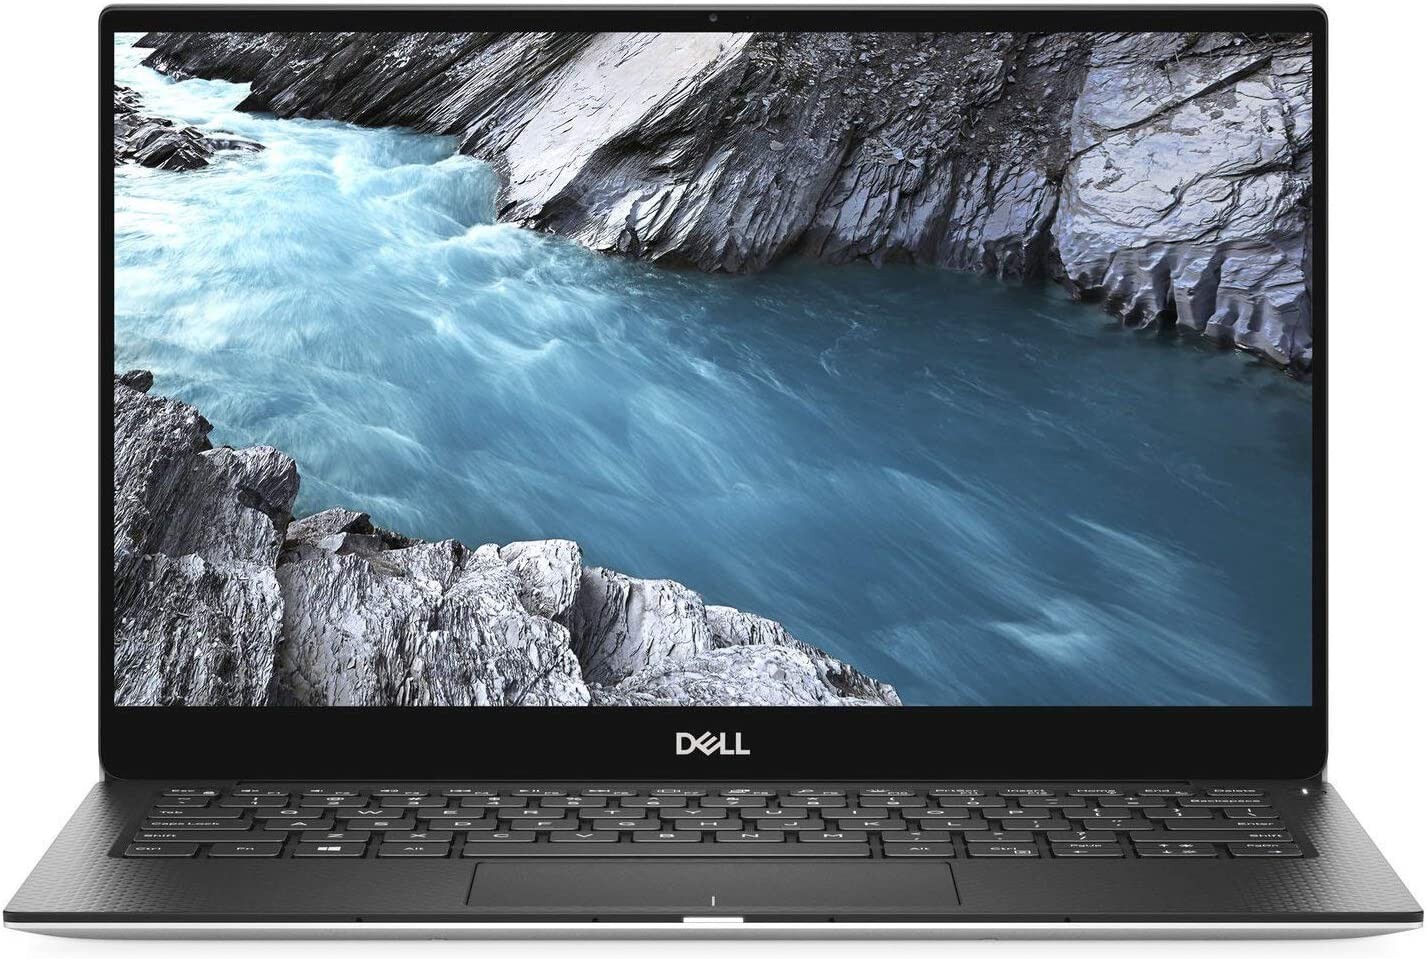 Dell XPS 13 7390 13.3" FHD i7-10510U 1.1GHz 8GB 512GB W10H Laptop Silver